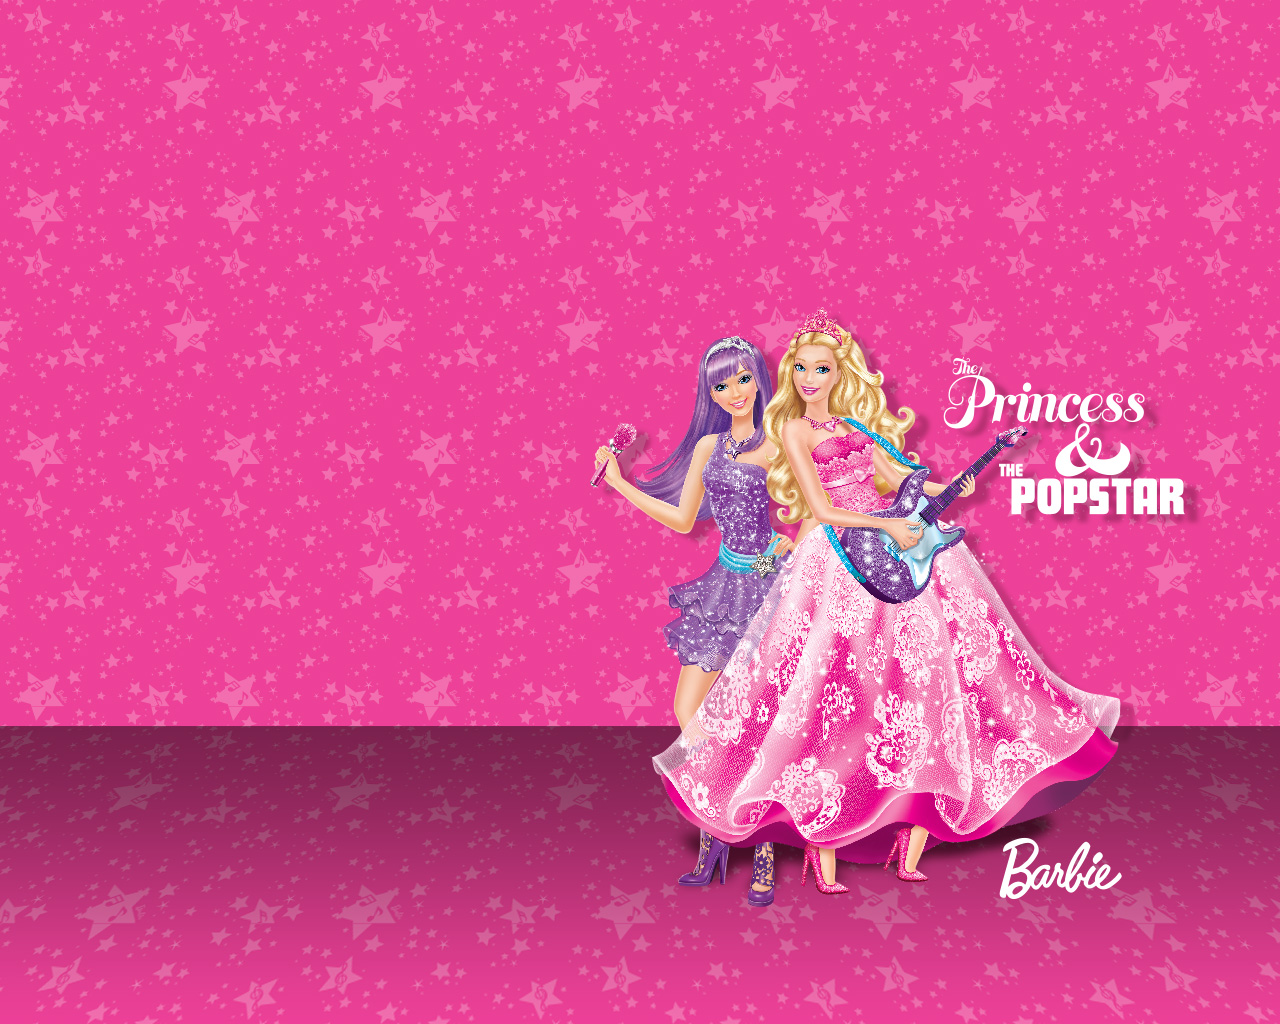 Barbie The Princess Popstar Wallpaper High Quality Design